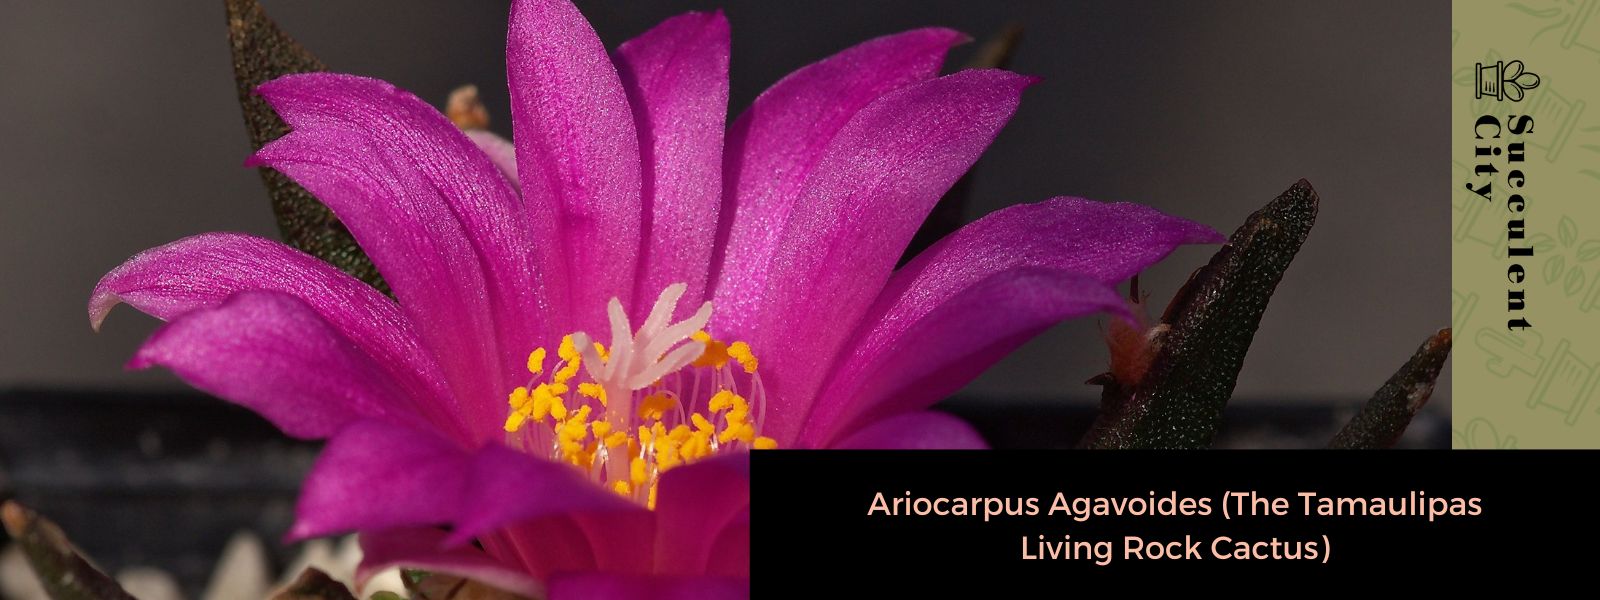 Ariocarpus Agavoides (El cactus roca viva de Tamaulipas)